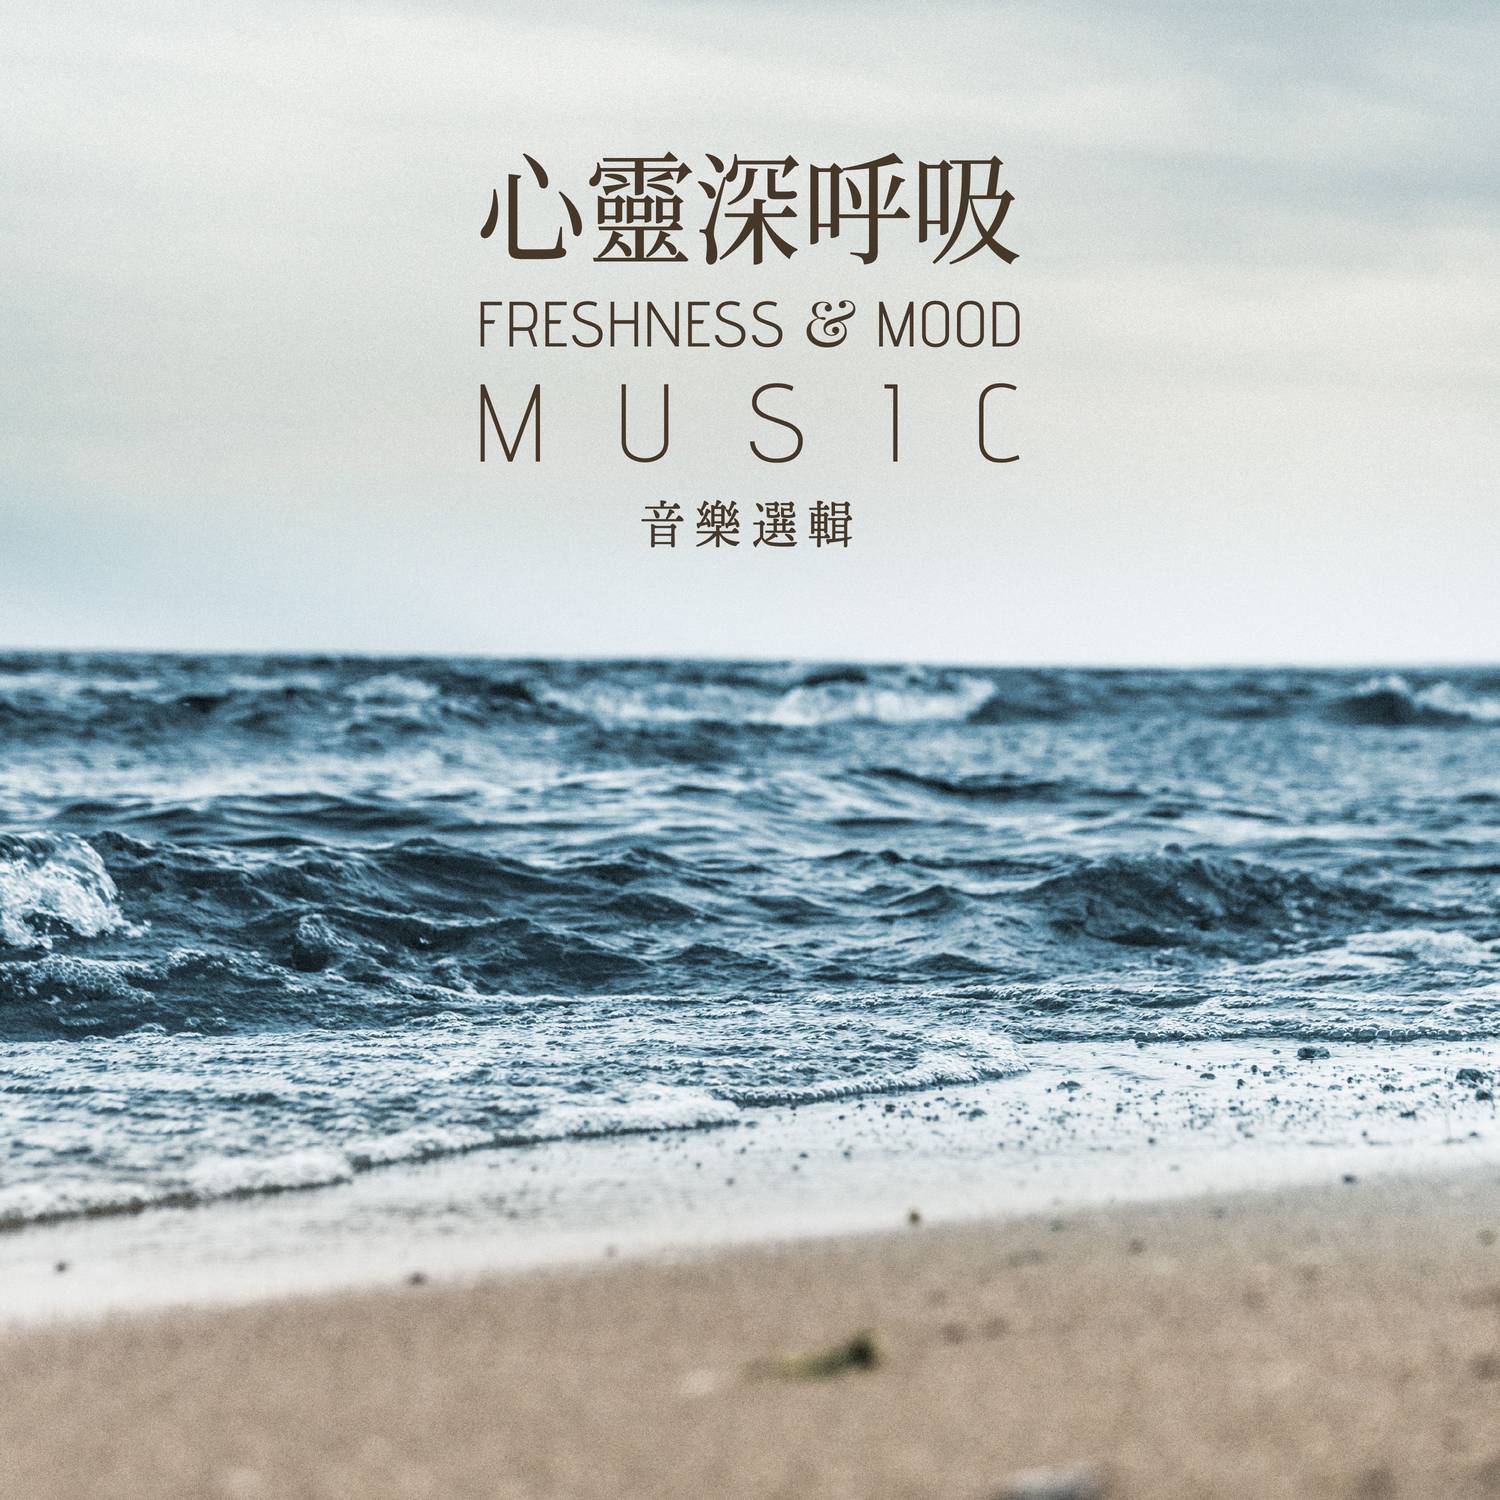 Freshness & Mood Music